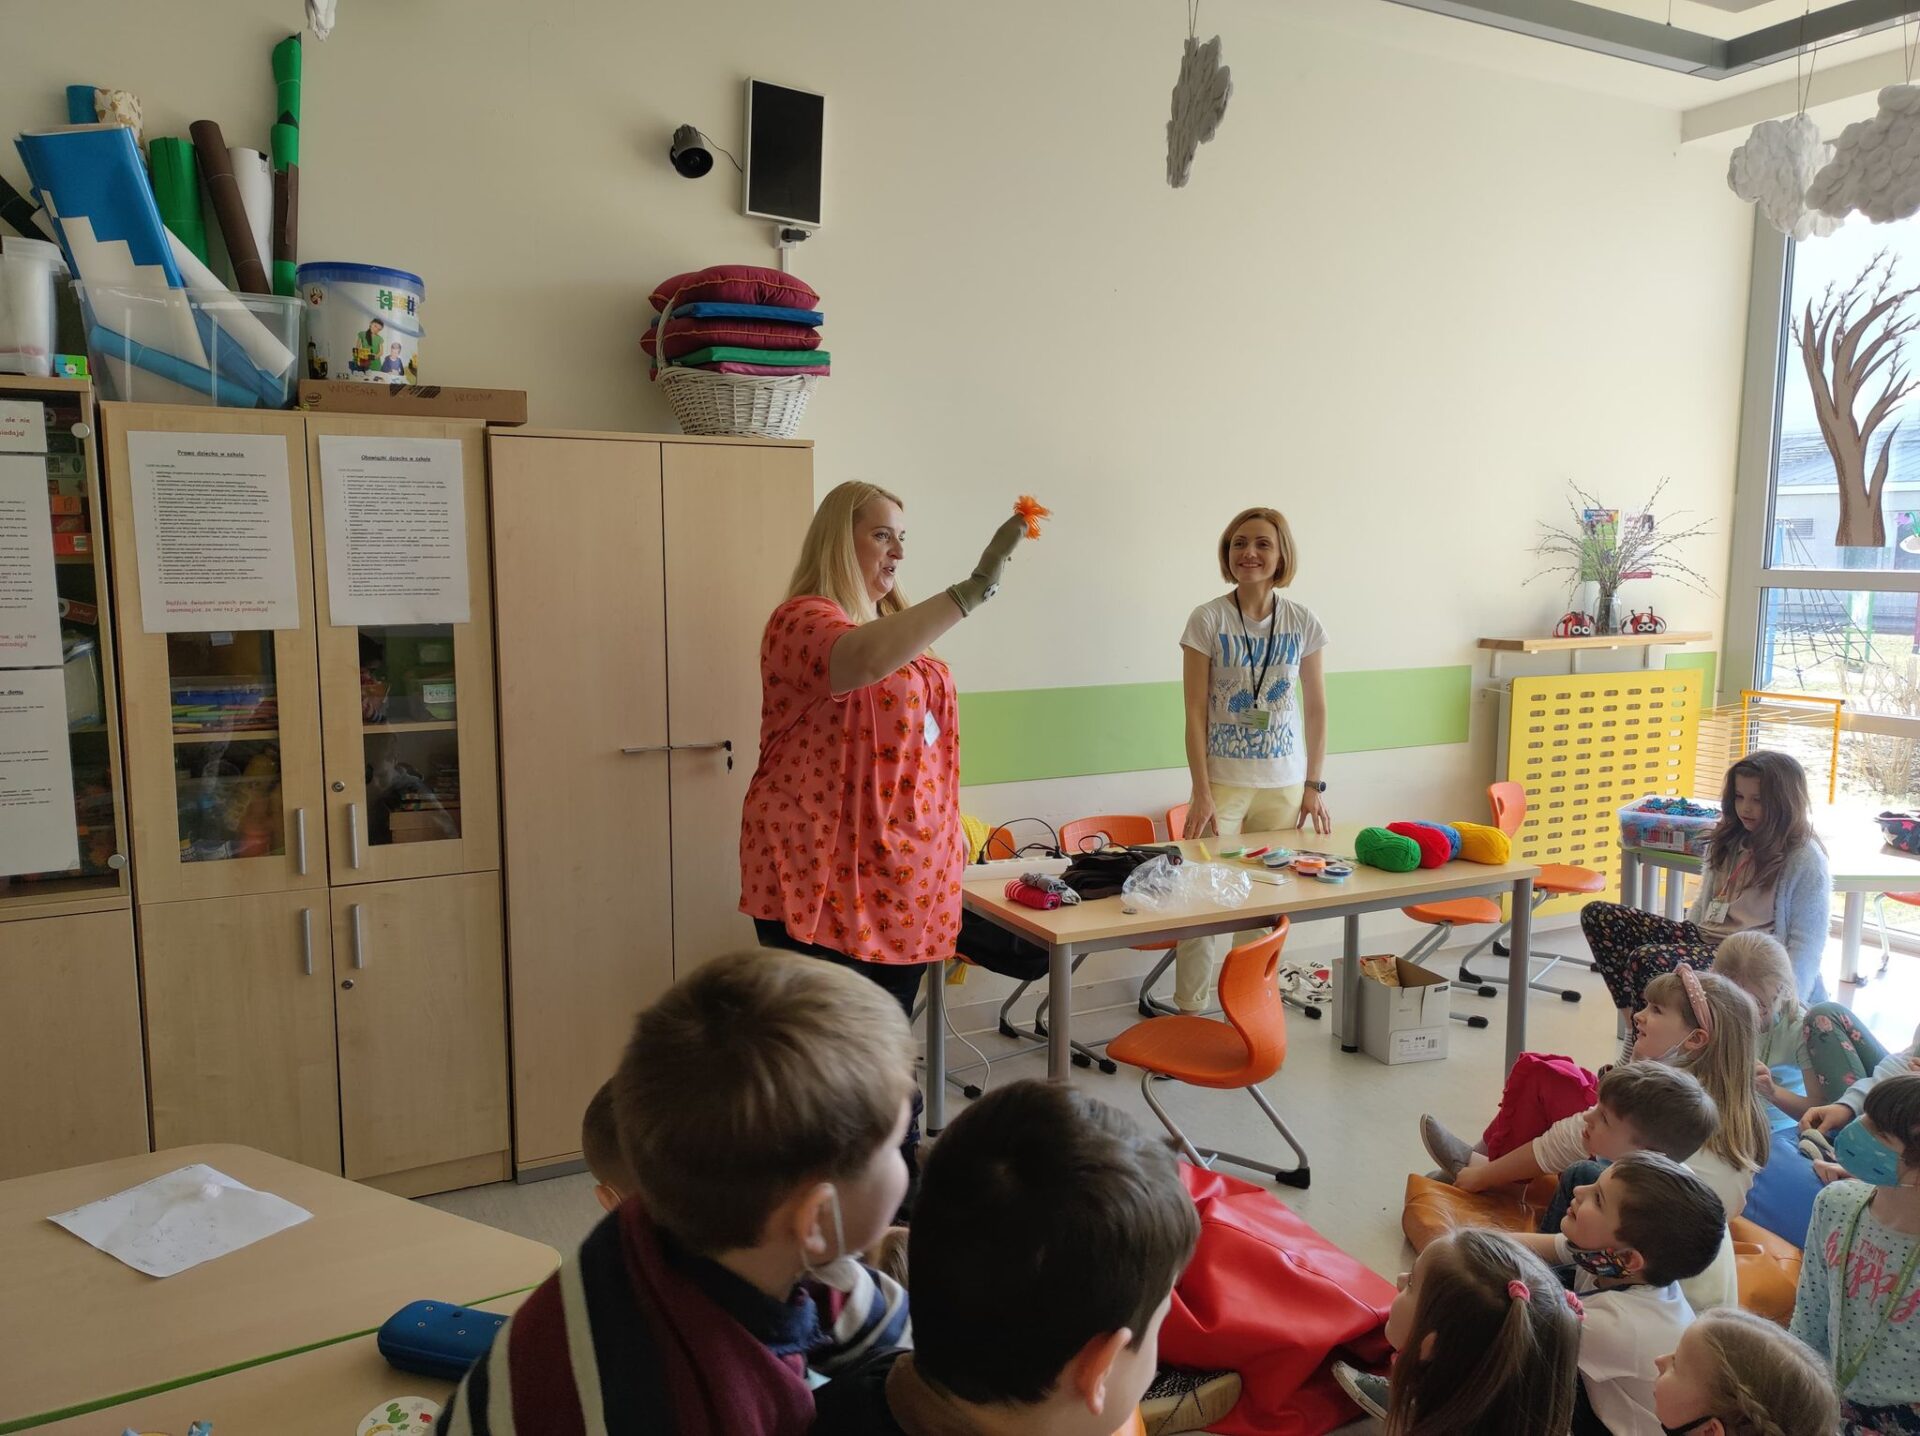 nauczyciel pokazuje uczniom wykonaną kolorową skarpetę